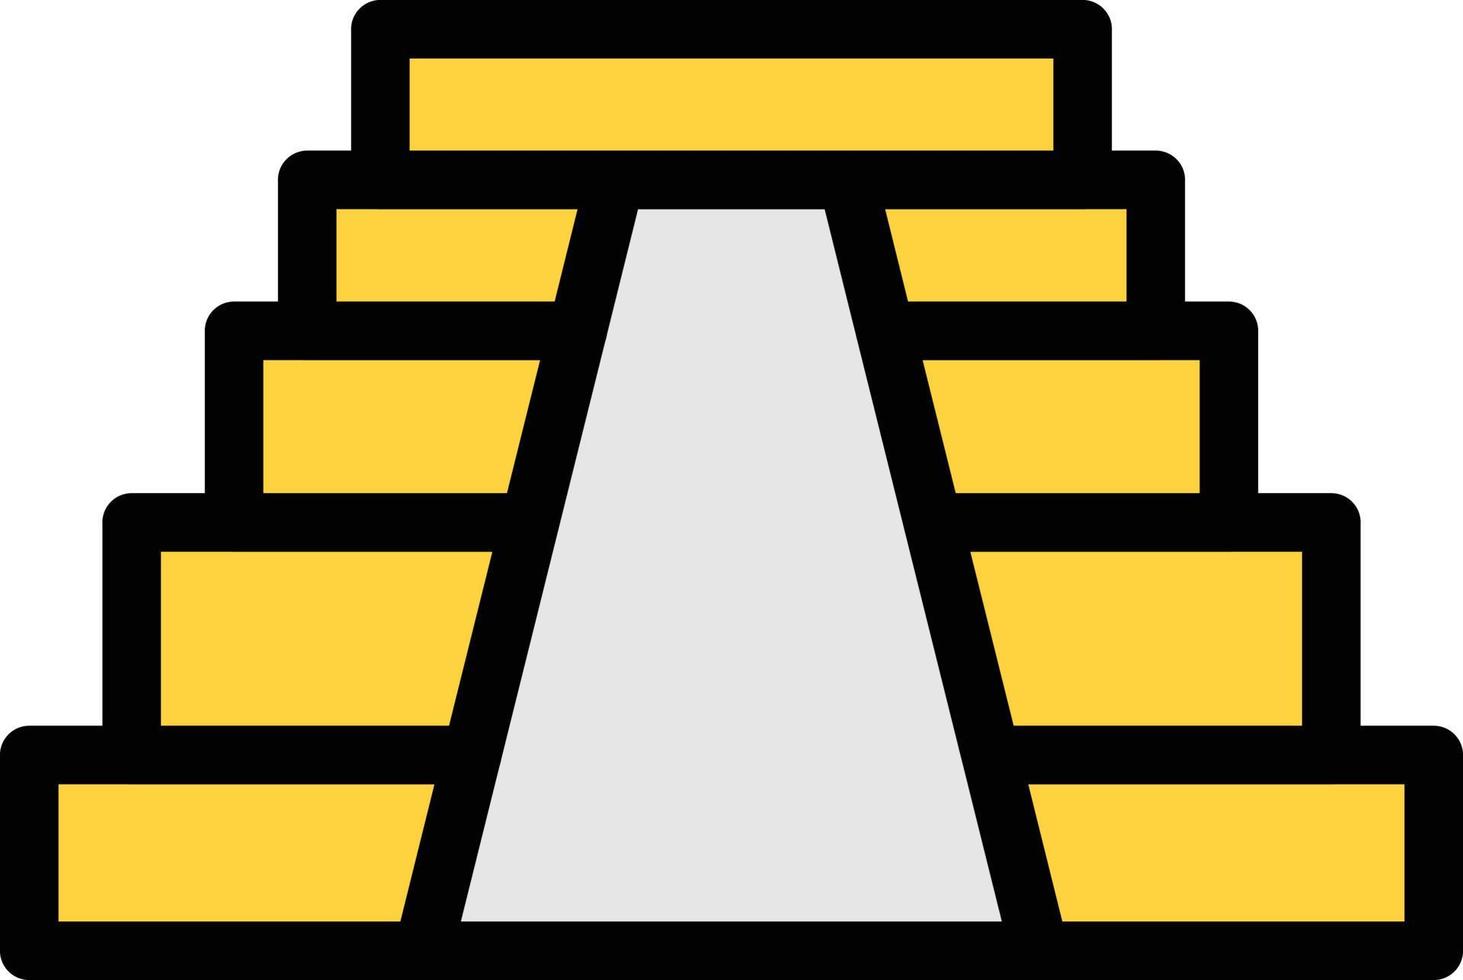 illustrazione vettoriale a piramide su uno sfondo. simboli di qualità premium. icone vettoriali per il concetto e la progettazione grafica.